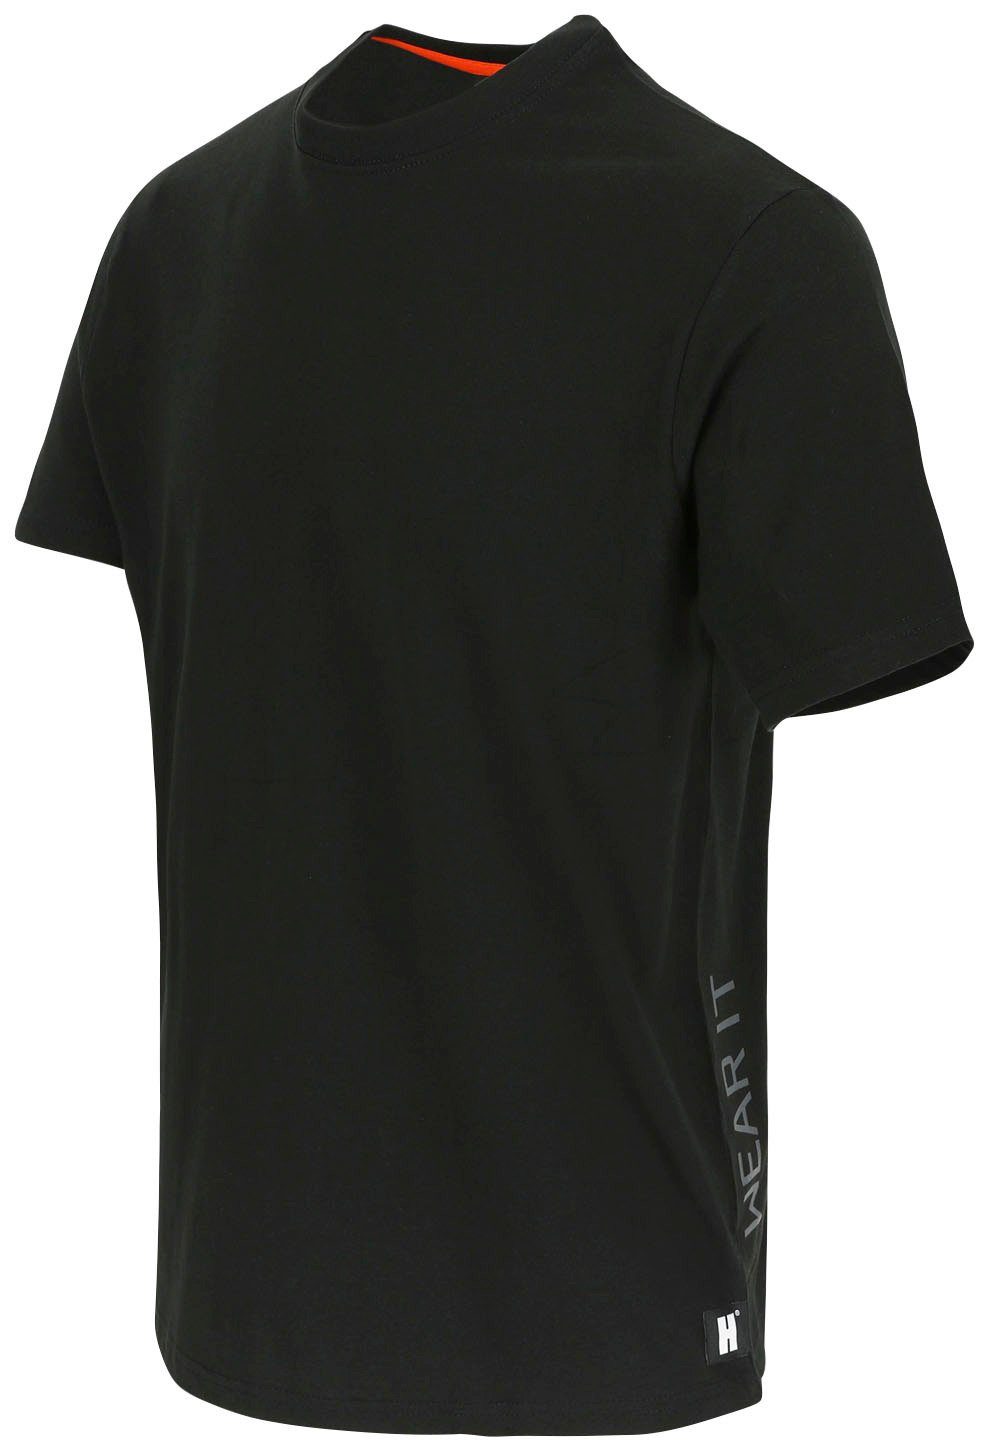 Herock T-Shirt Callius T-Shirt kurze Ärmel, Rundhalsausschnitt, Herock®-Aufdruck, schwarz Rippstrickkragen Ärmel kurze